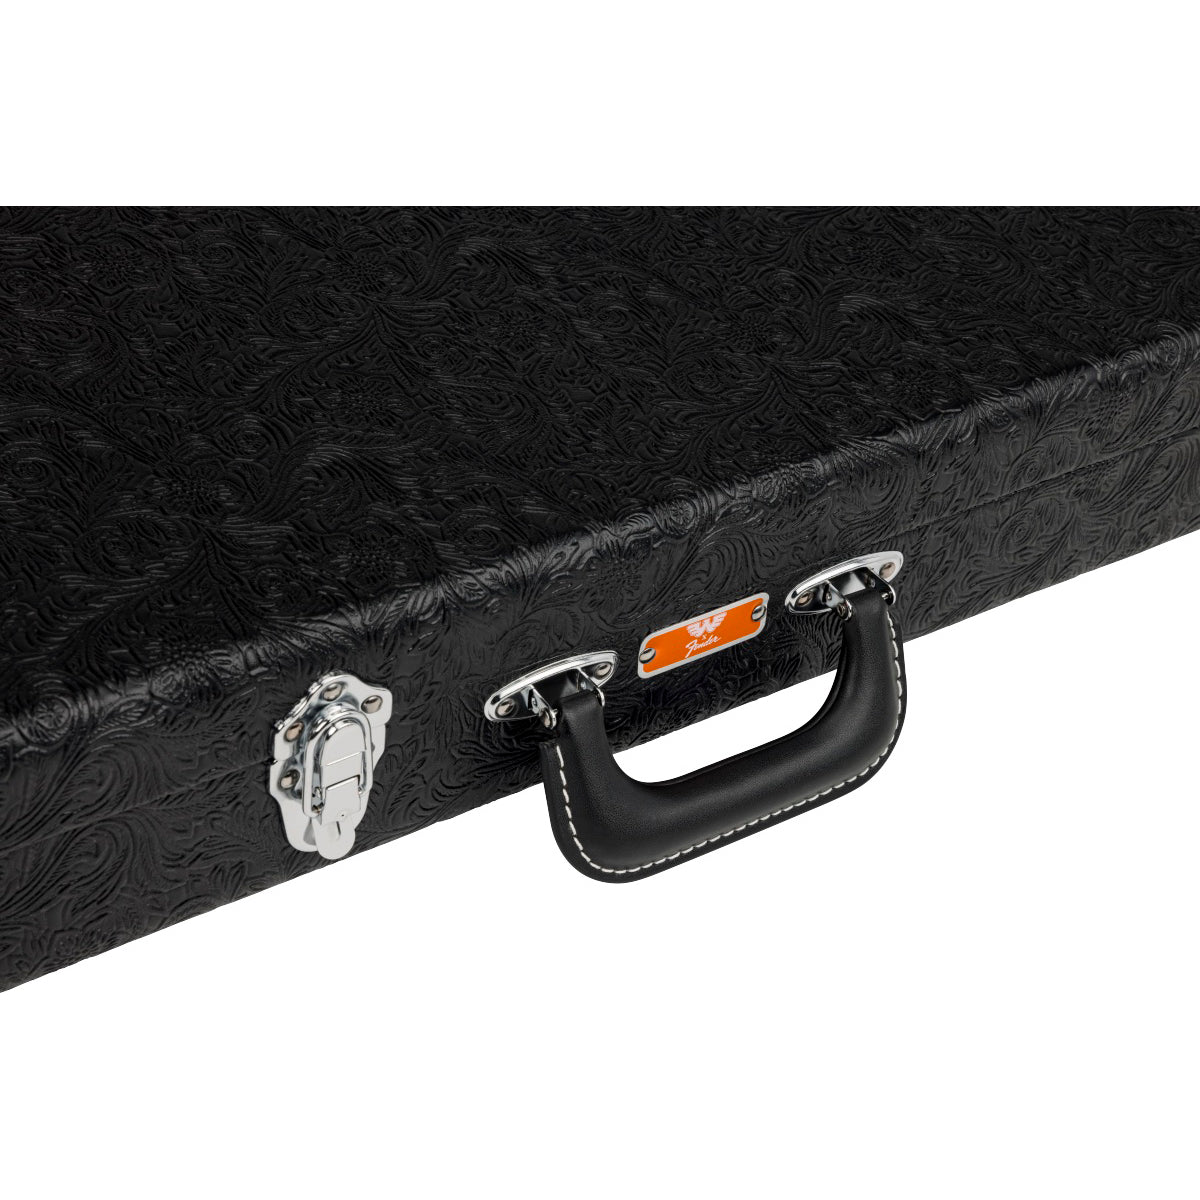 Fender Waylon Jennings Strat/Tele Case - Black Tooled Leather